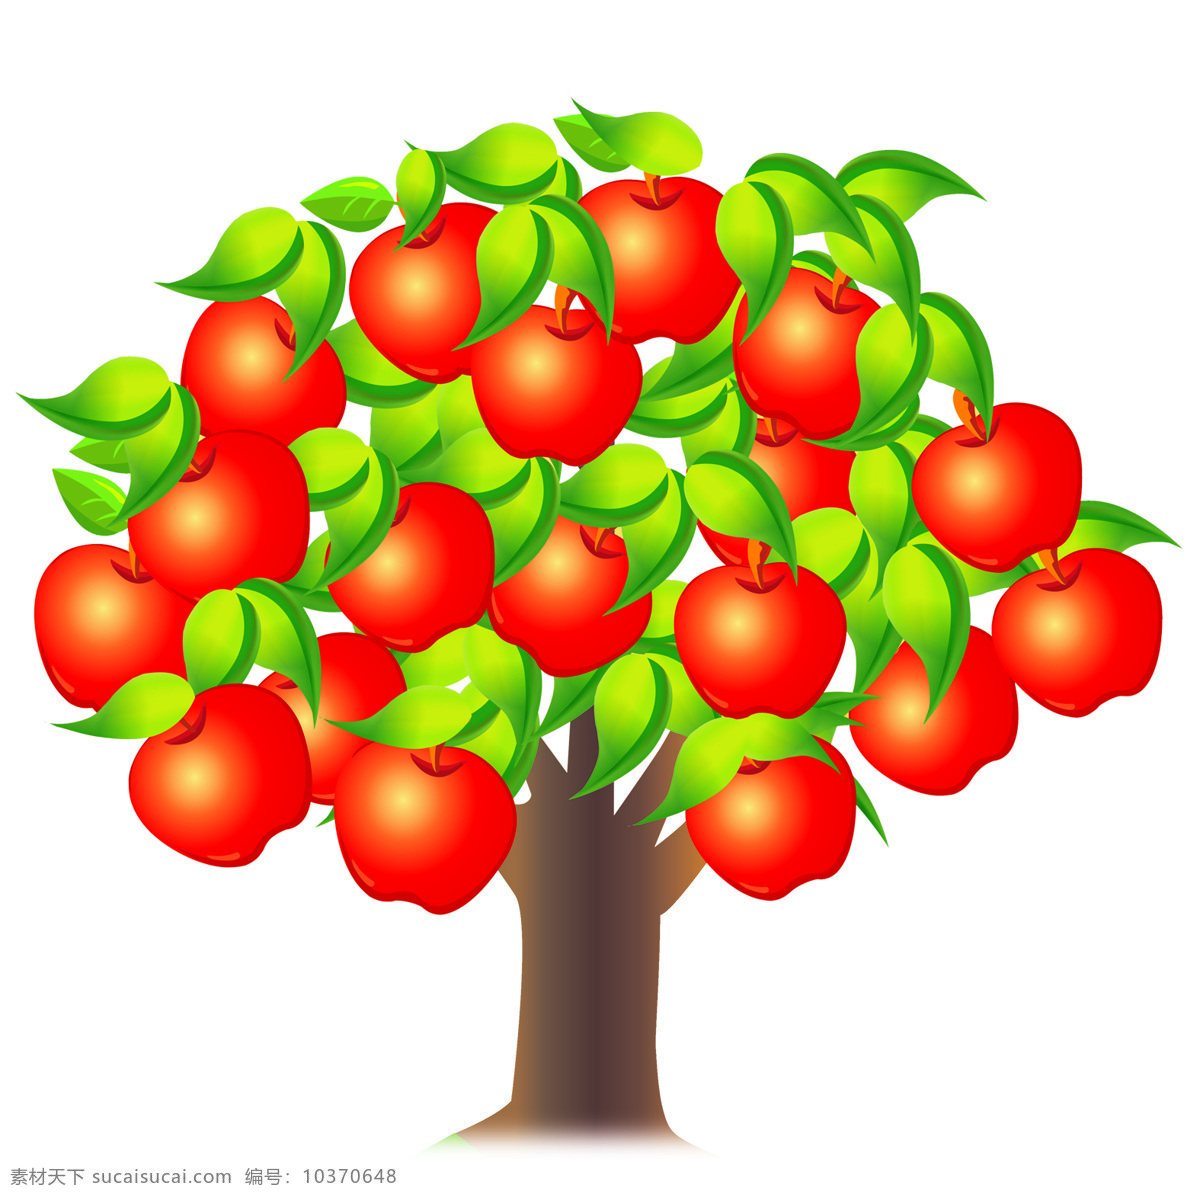 苹果树 卡通 红苹果 动漫动画